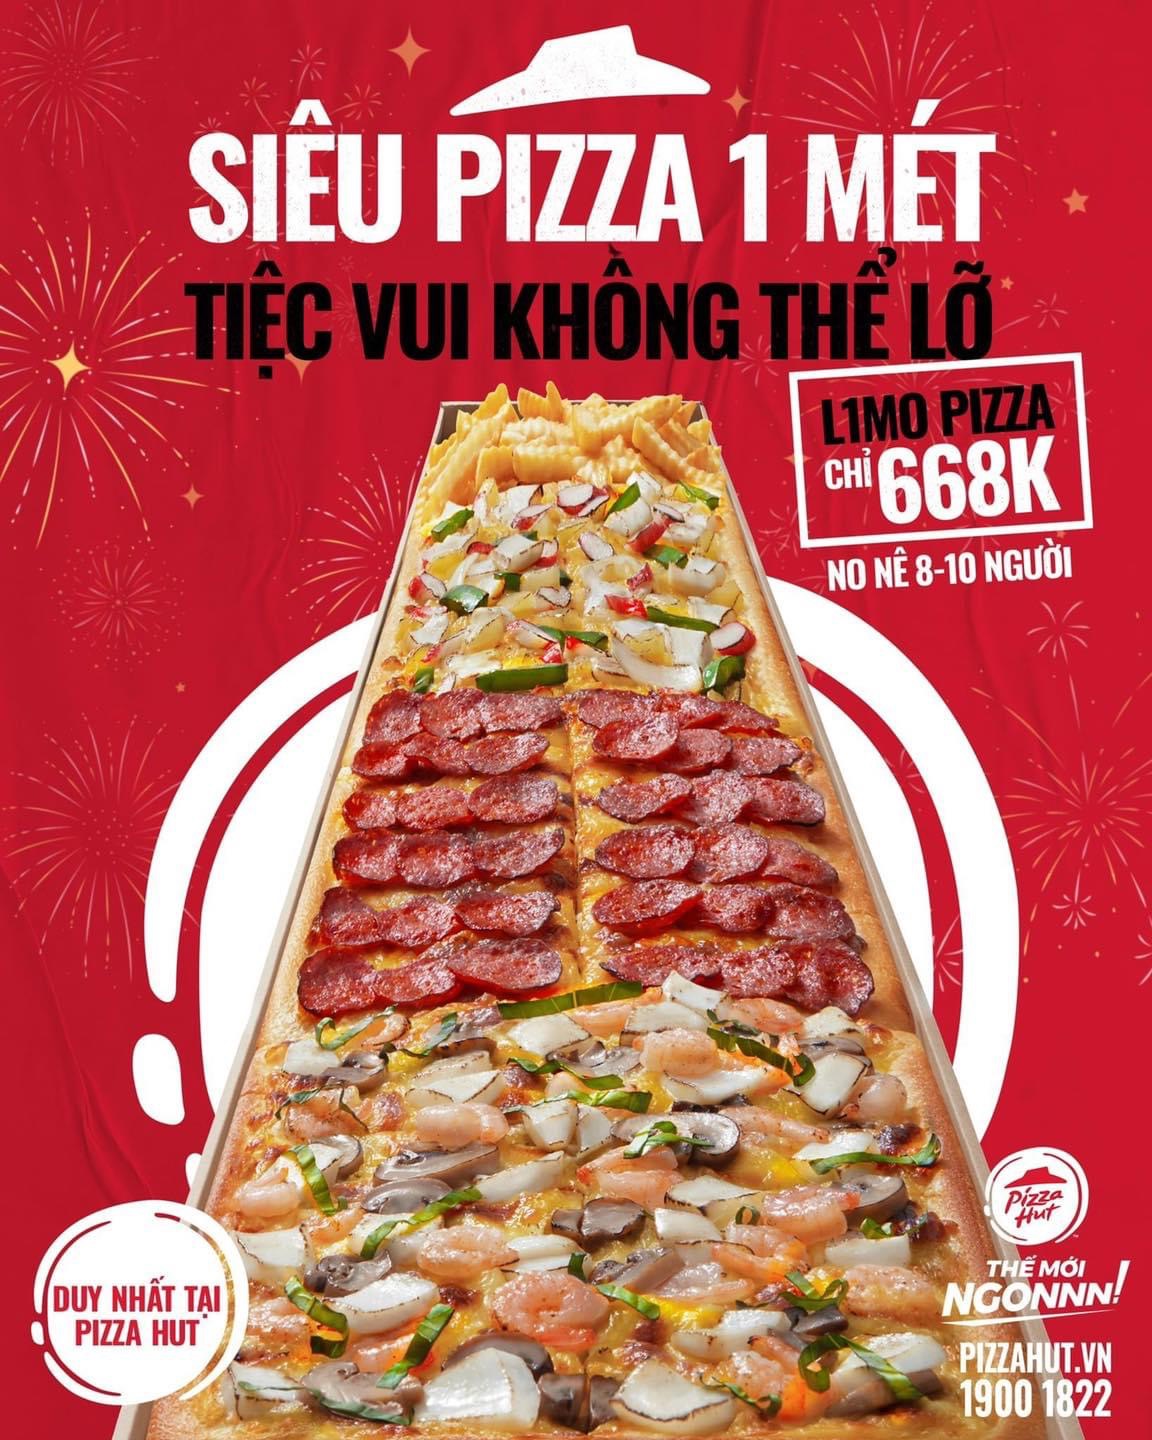 🔥 [Hot] Pizza Hut Chính Thức Ra Mắt Siêu Pizza 1M 🍕 | Vincom